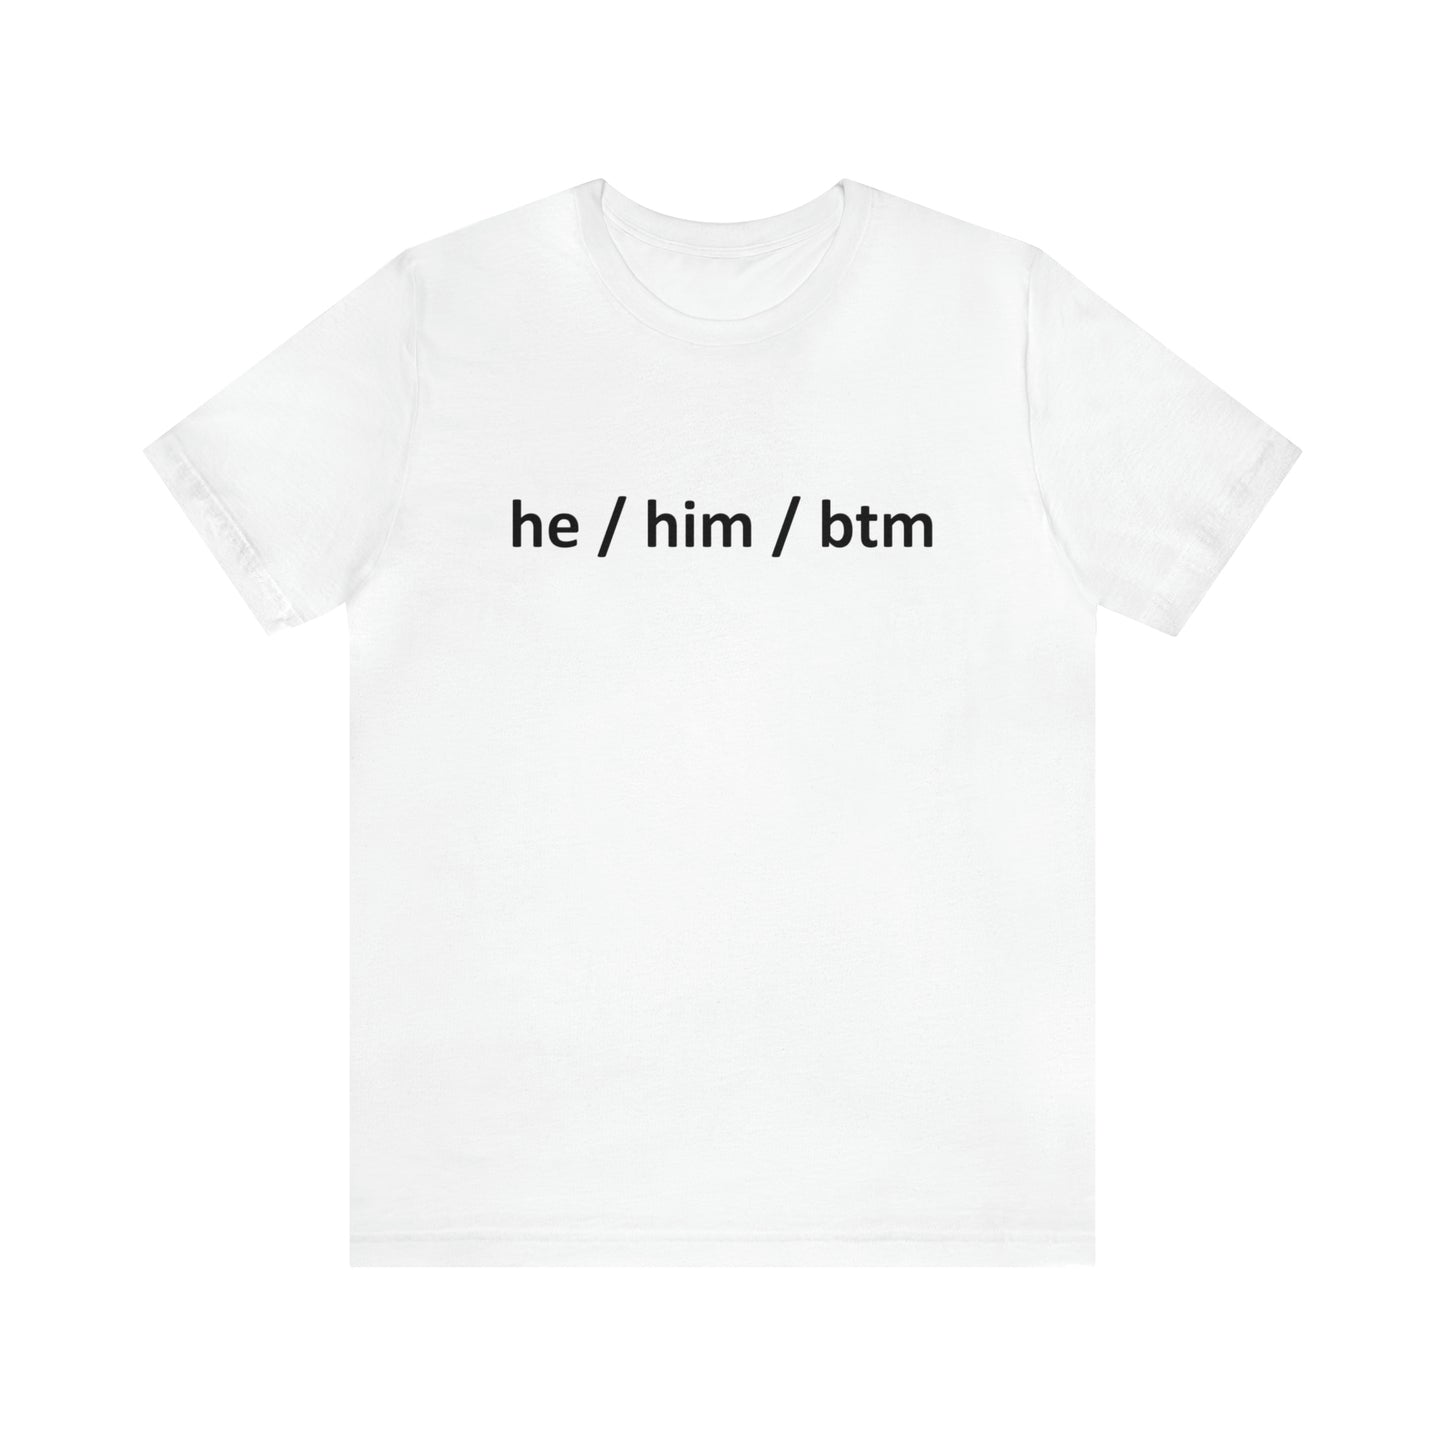 he / him / btm Pronoun Unisex Short Sleeve T-Shirt